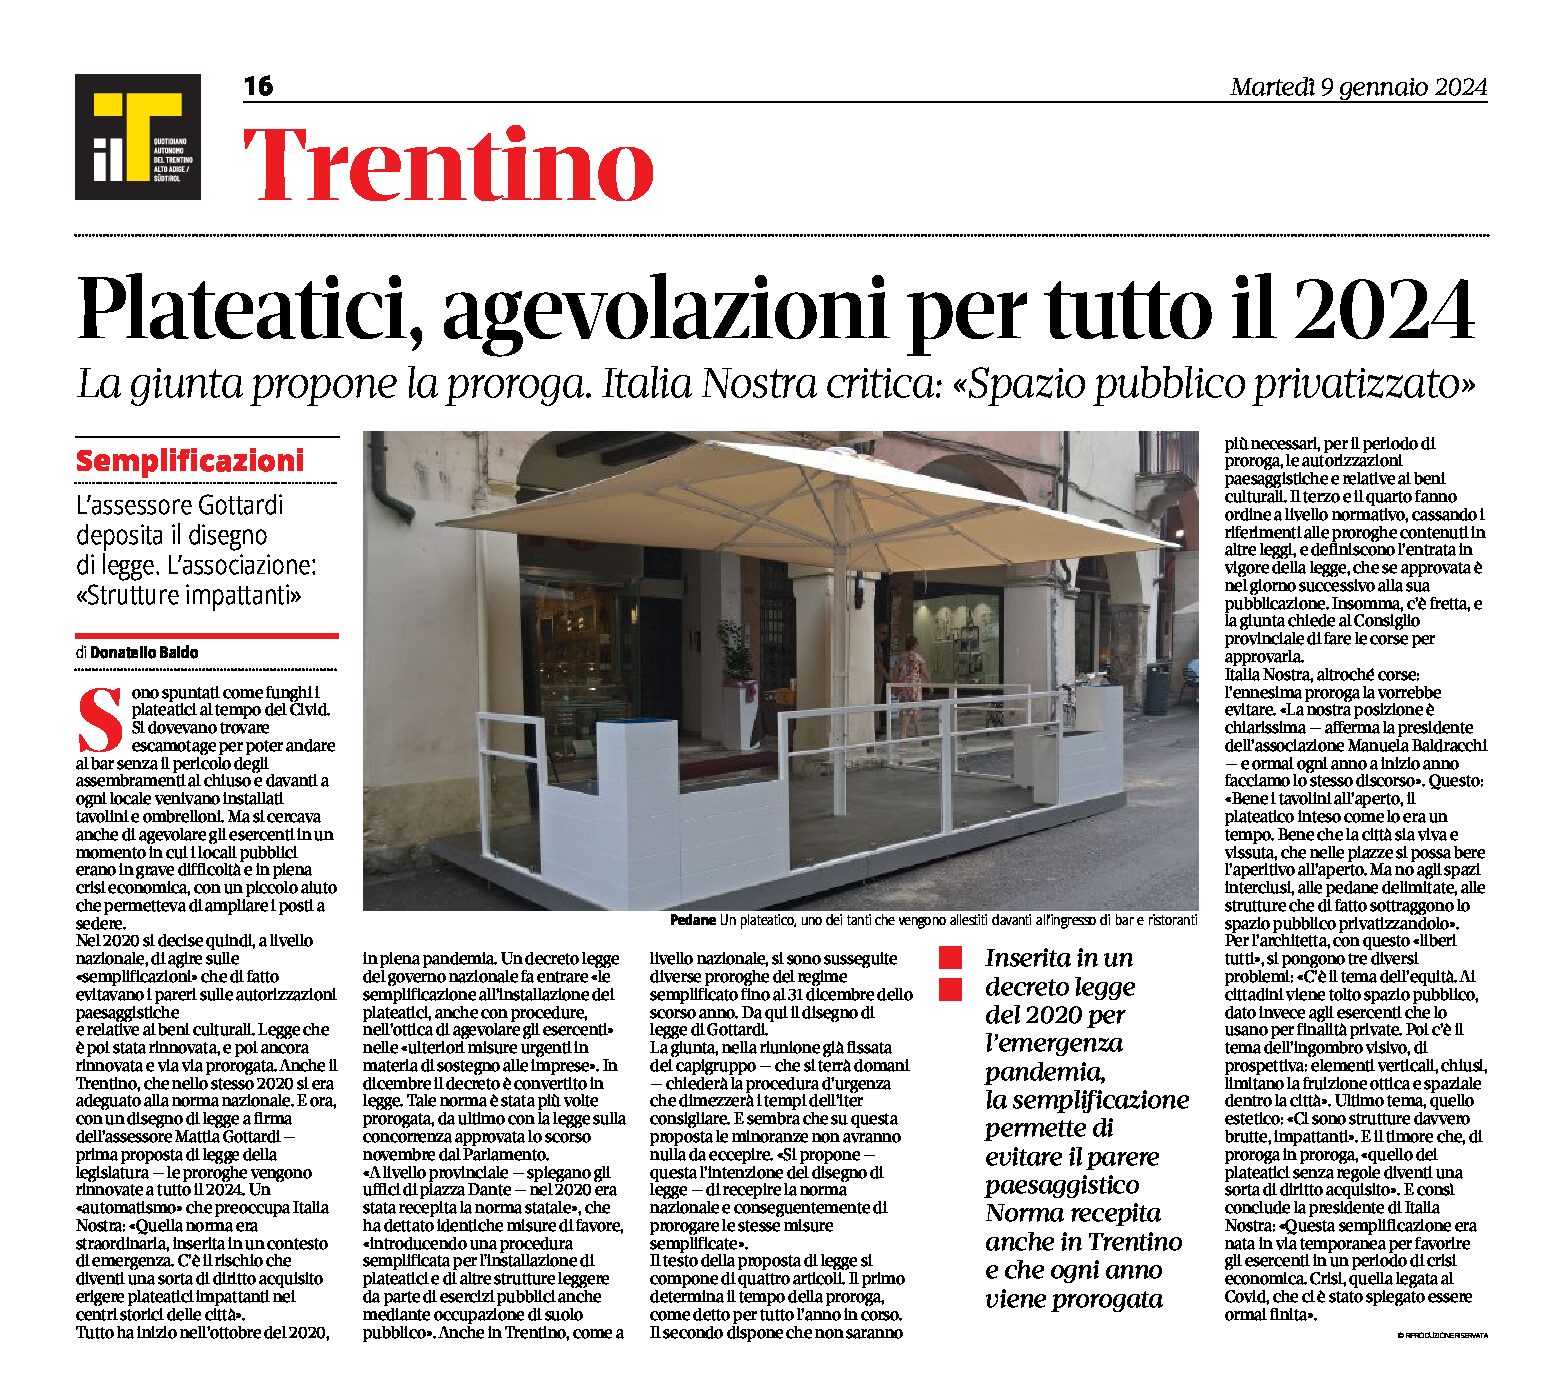 Trentino, plateatici: agevolazioni per tutto il 2024. Italia Nostra “spazio pubblico privatizzato”